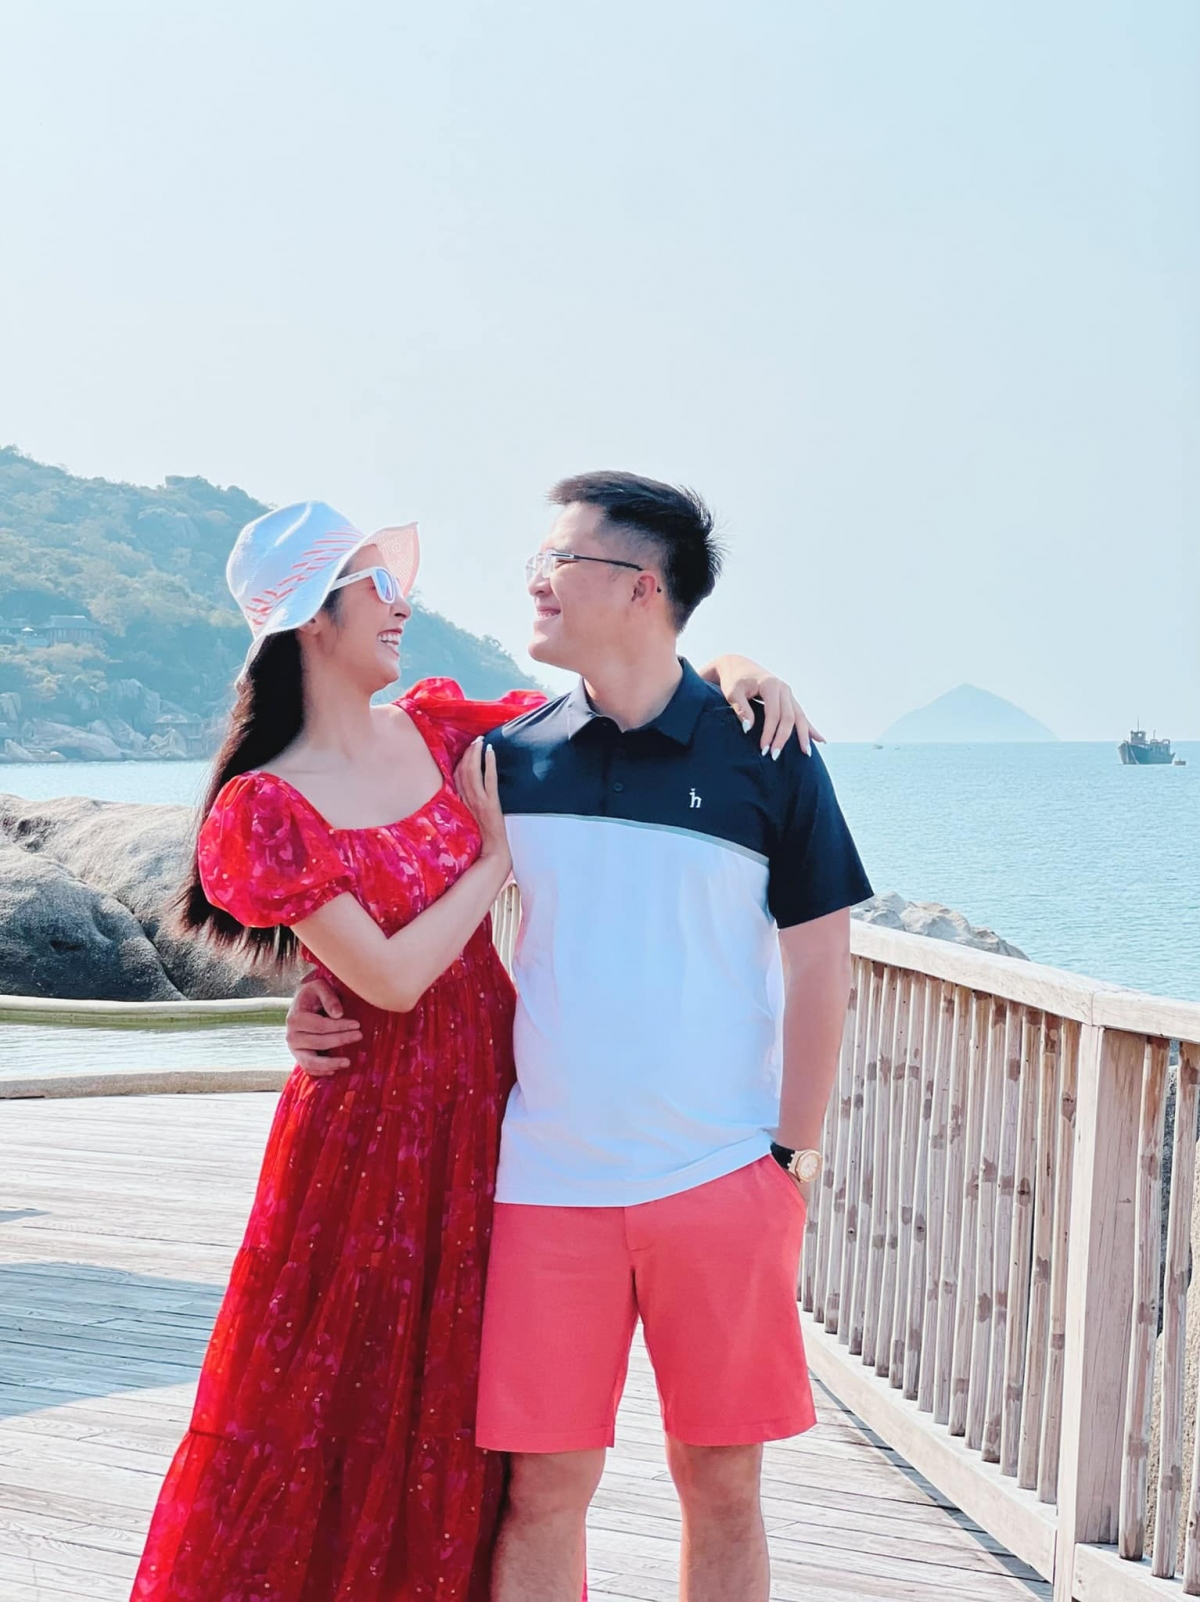 Hoa hậu Ngọc Hân cùng chồng sắp cưới đi du lịch nhân dịp 20/10 - Ảnh 2.